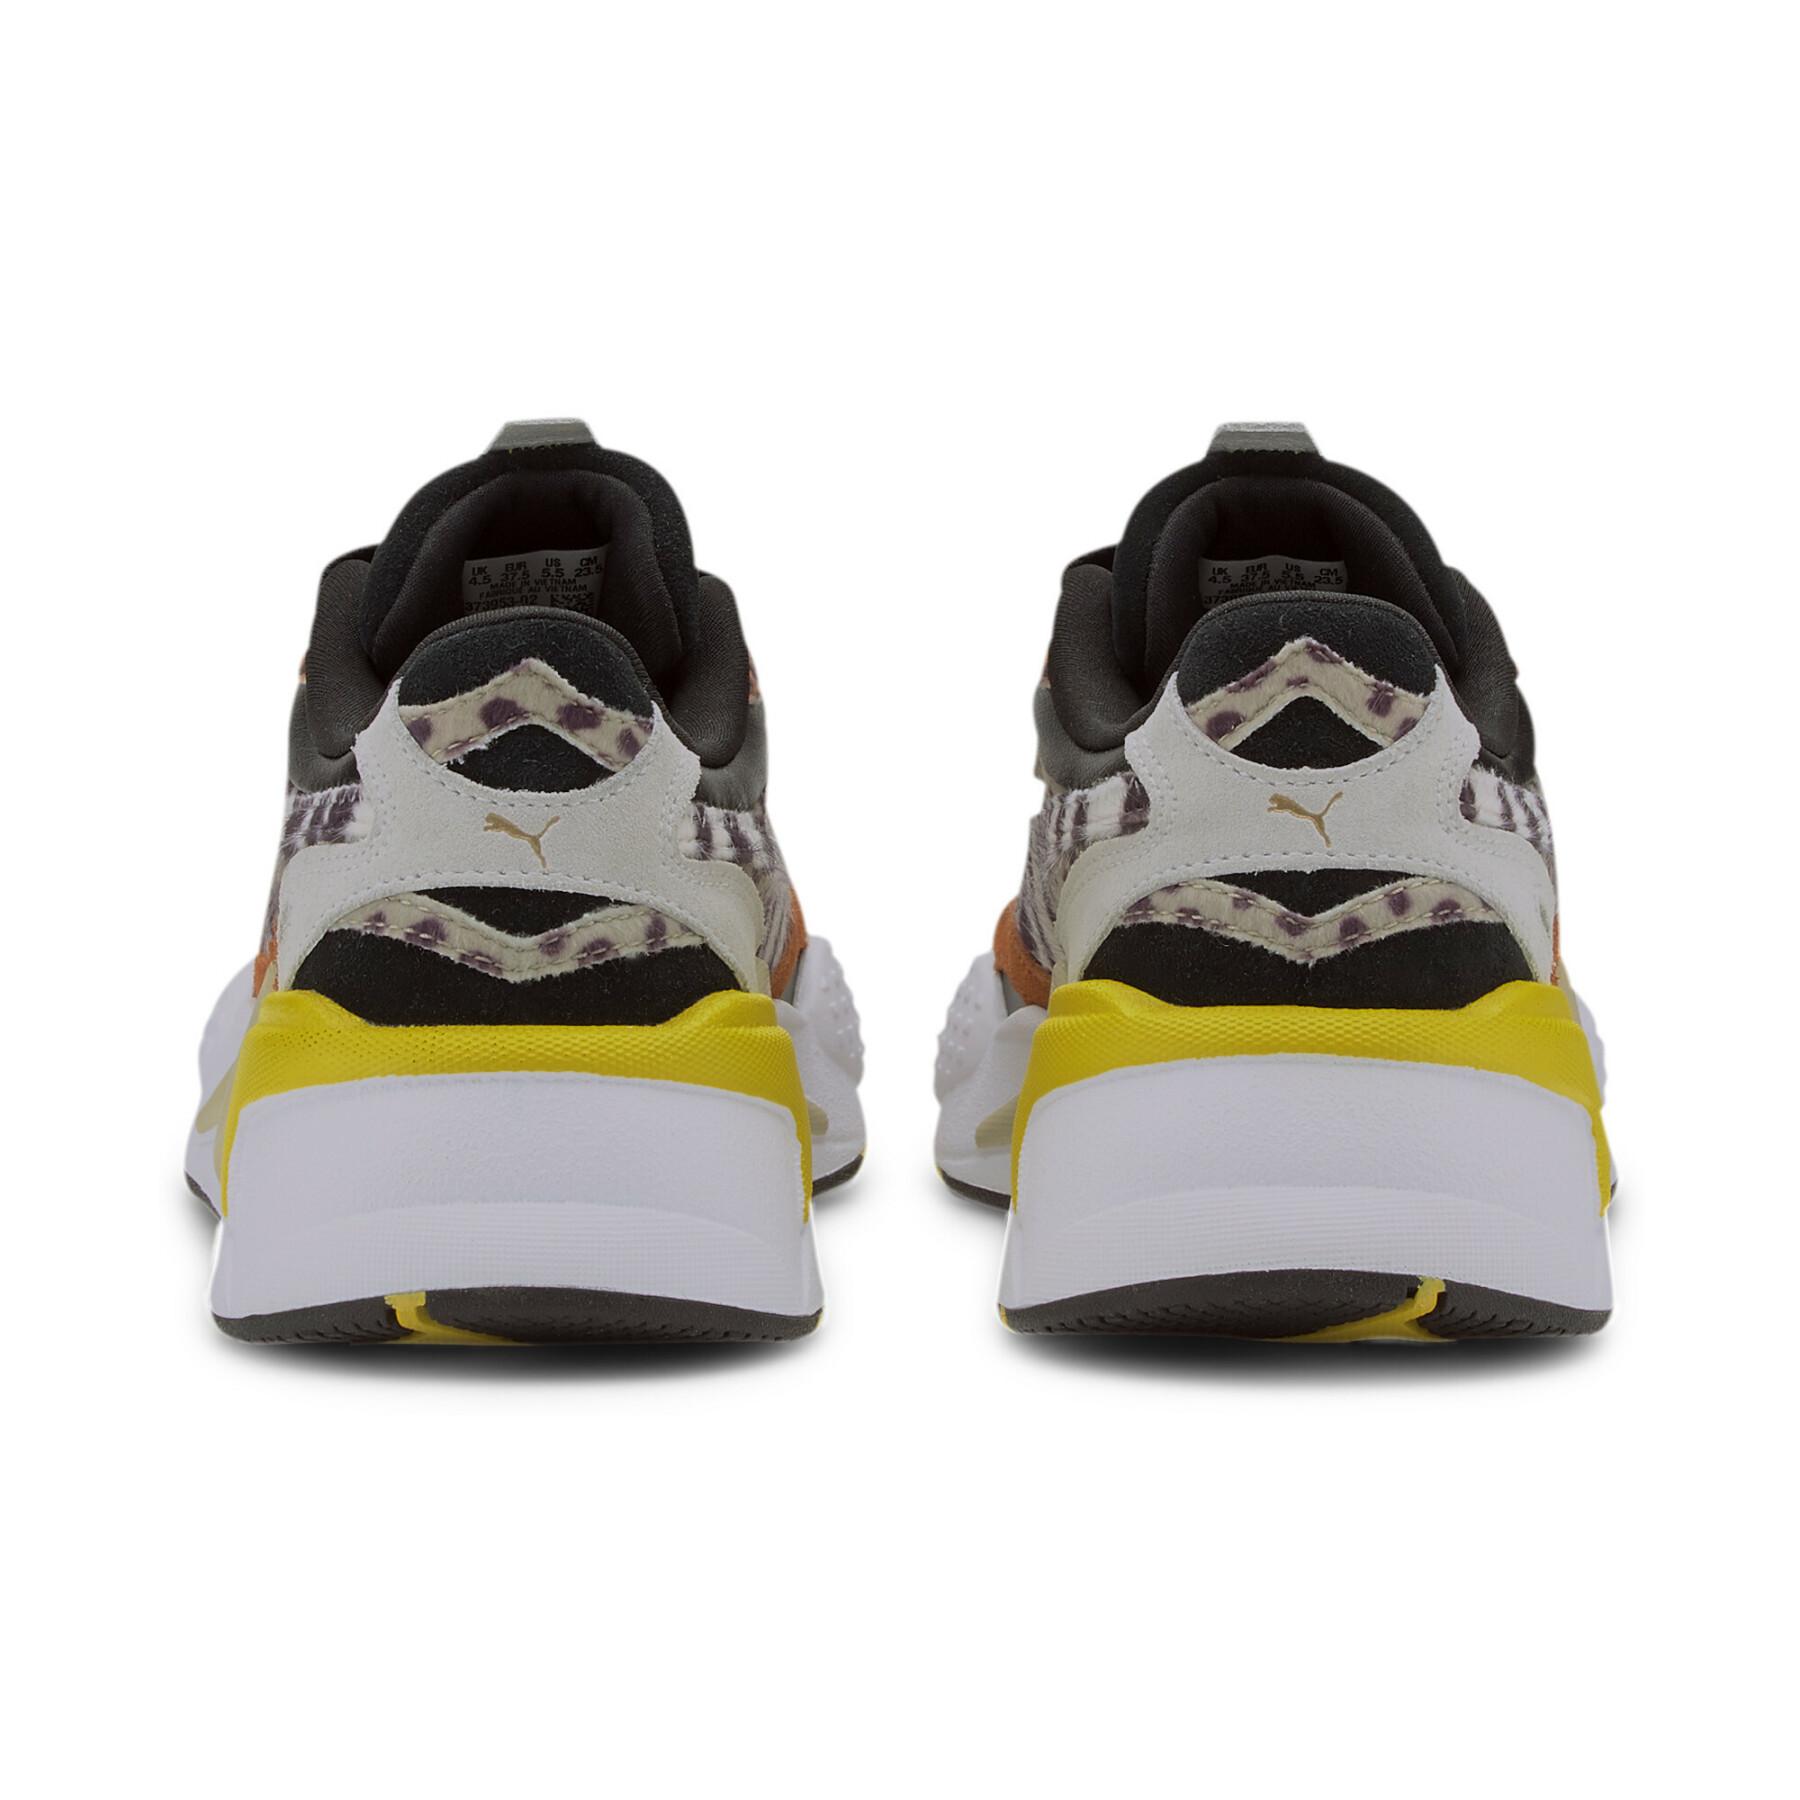 Zapatillas de deporte de mujer Puma RS-X³ W.Cats